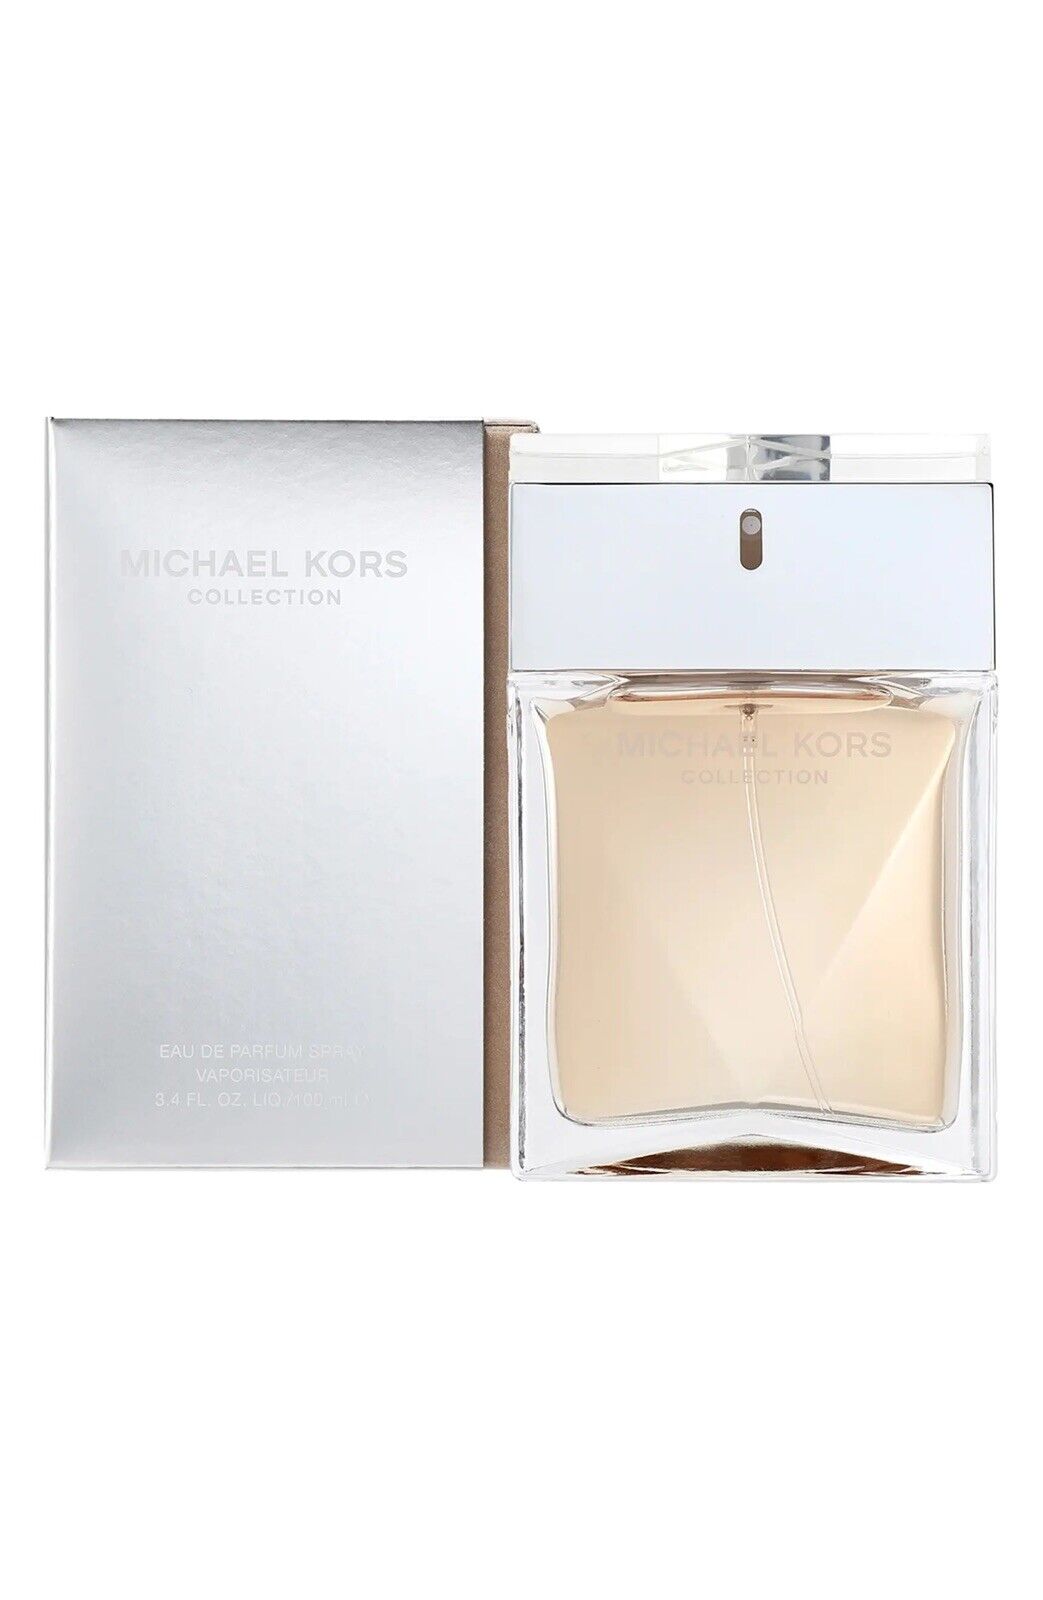 Michael Kors Signature Eau De Parfum Spray (3.4 Oz / 100 ML) *New/Sealed* Rare